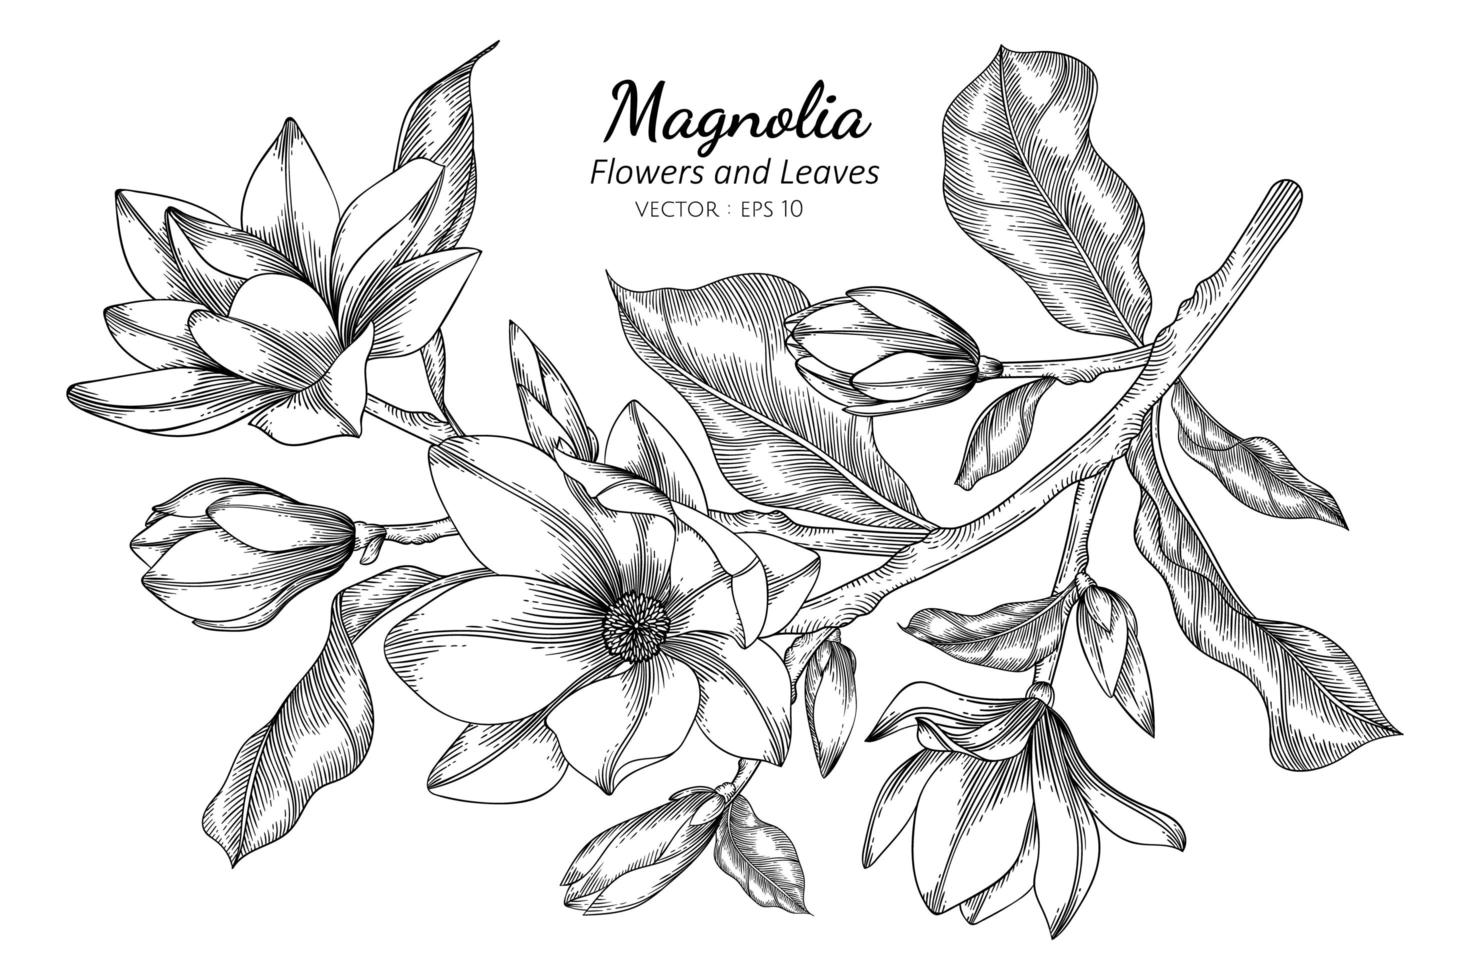 Magnolia flores y hojas de dibujo ilustración con arte lineal sobre fondo blanco. vector